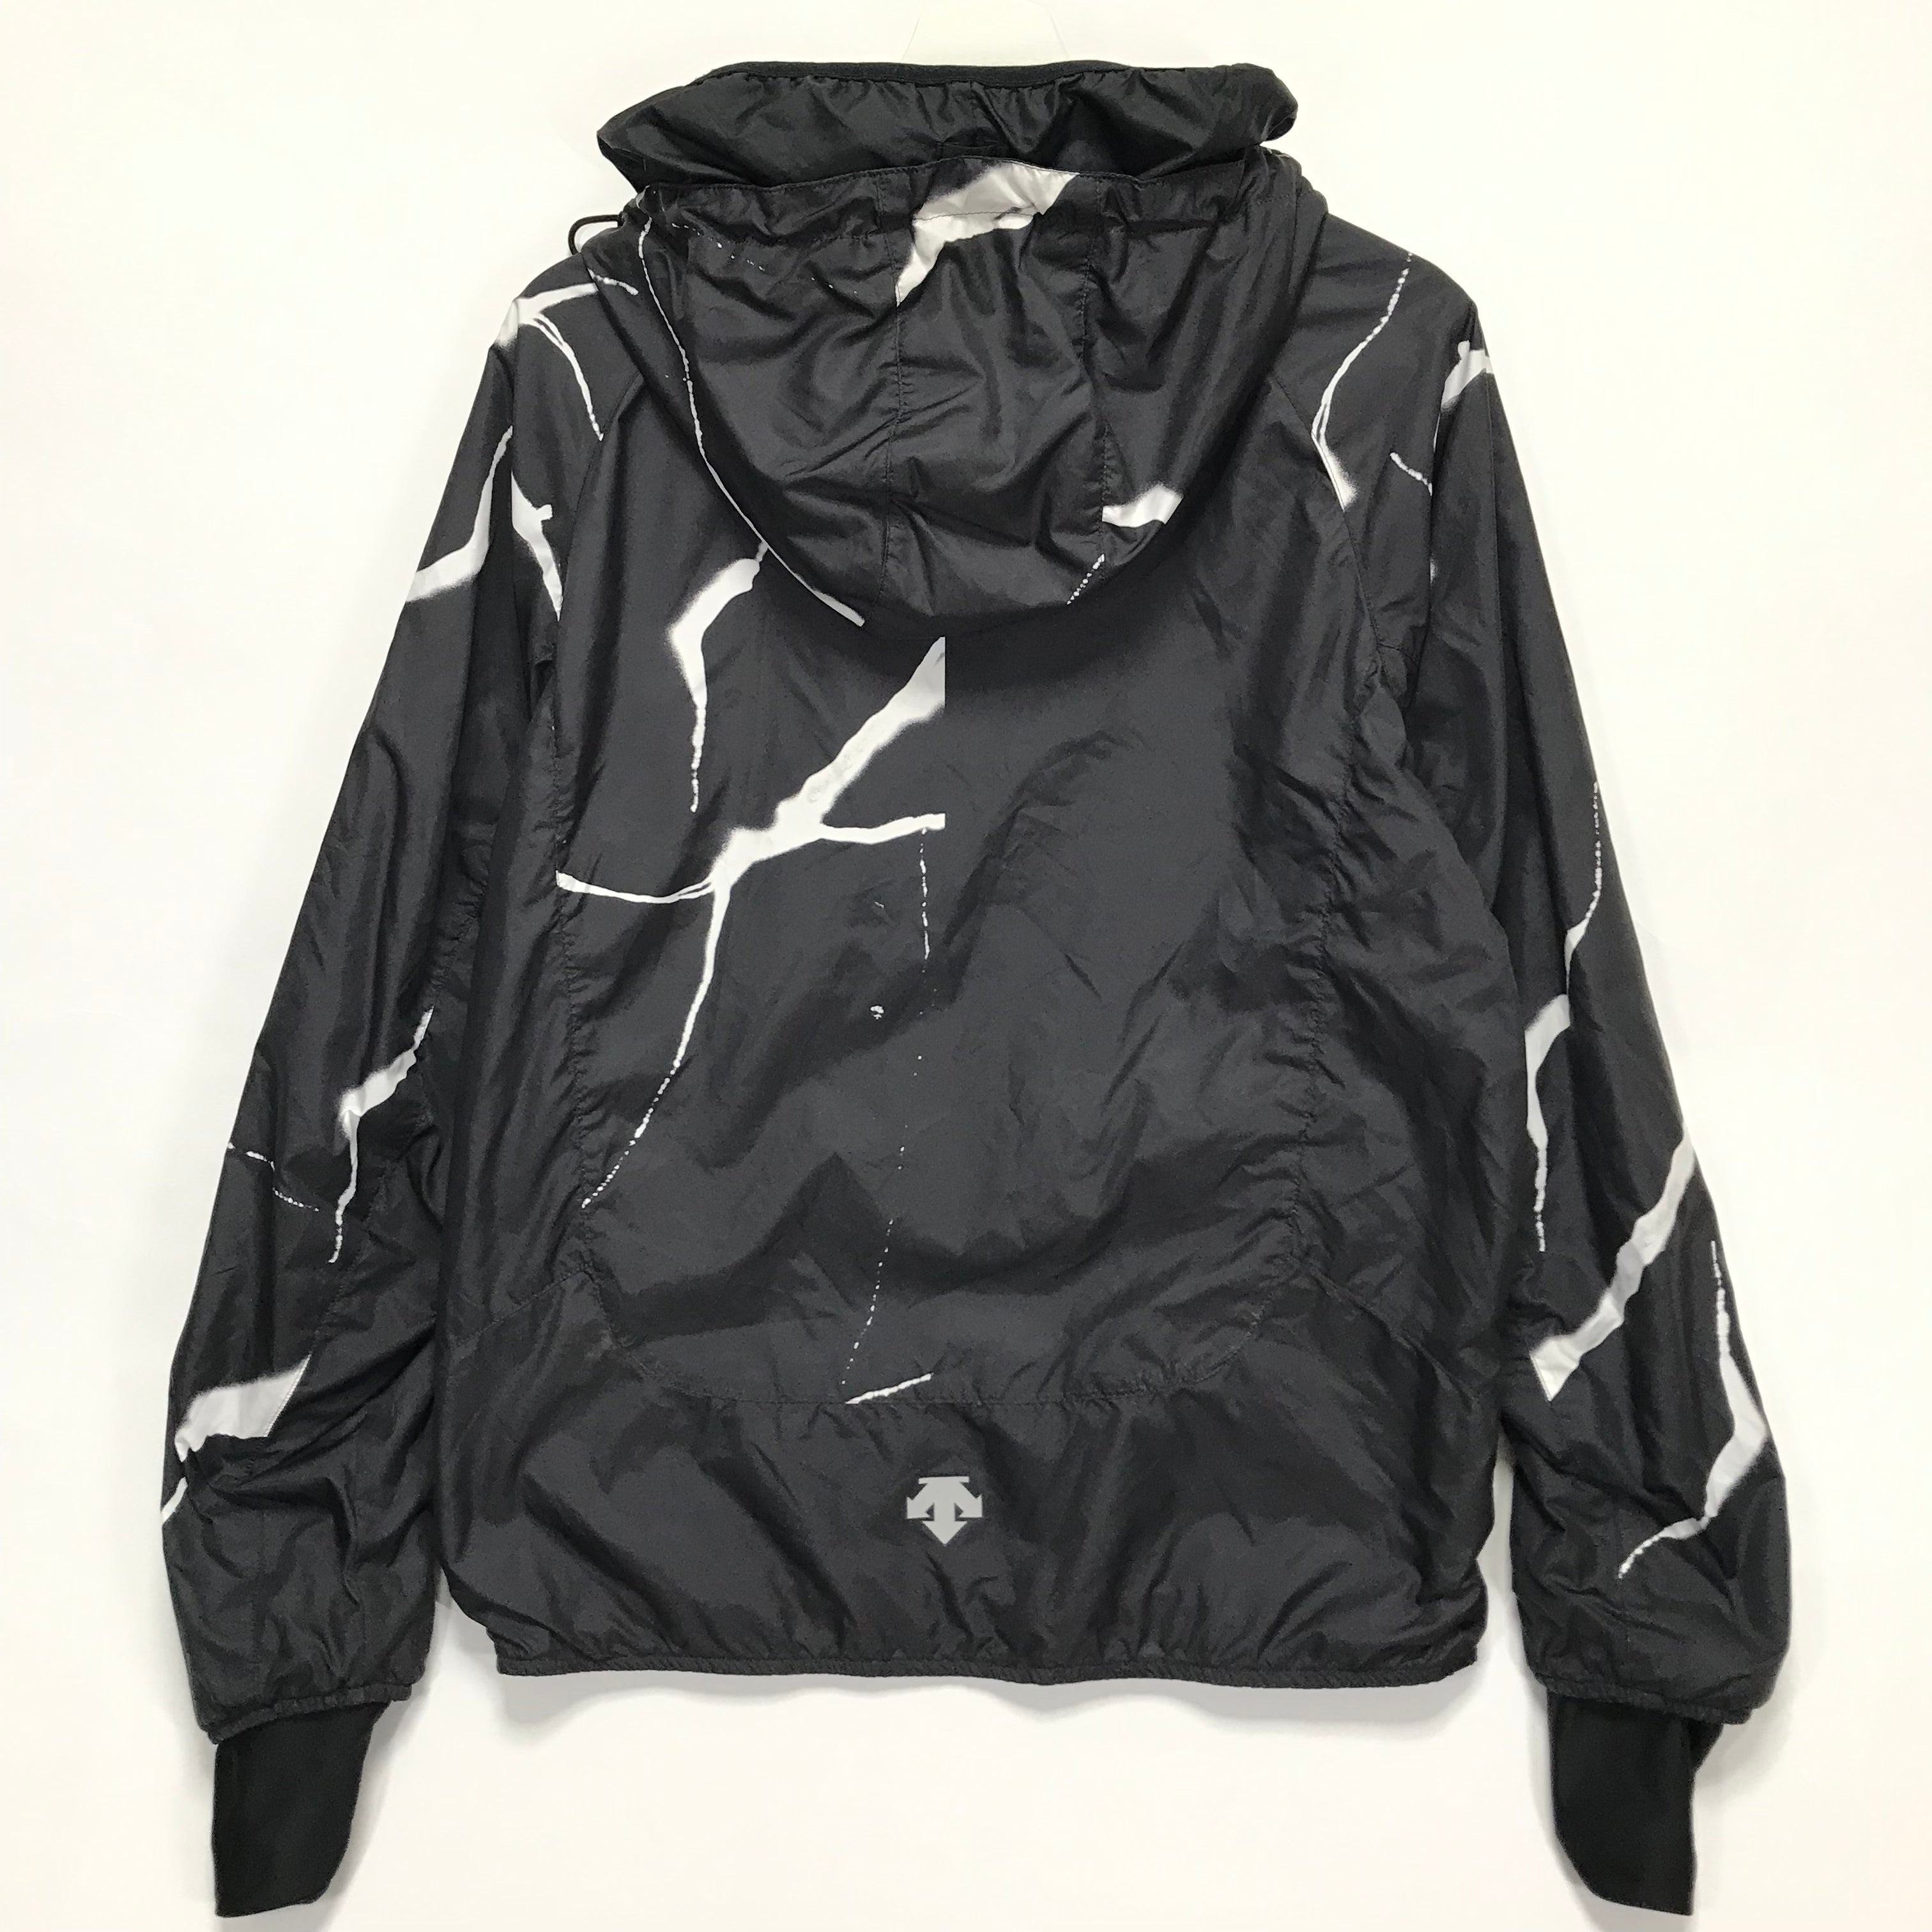 FormTech Hooded Zip Through Running Jacket - Black